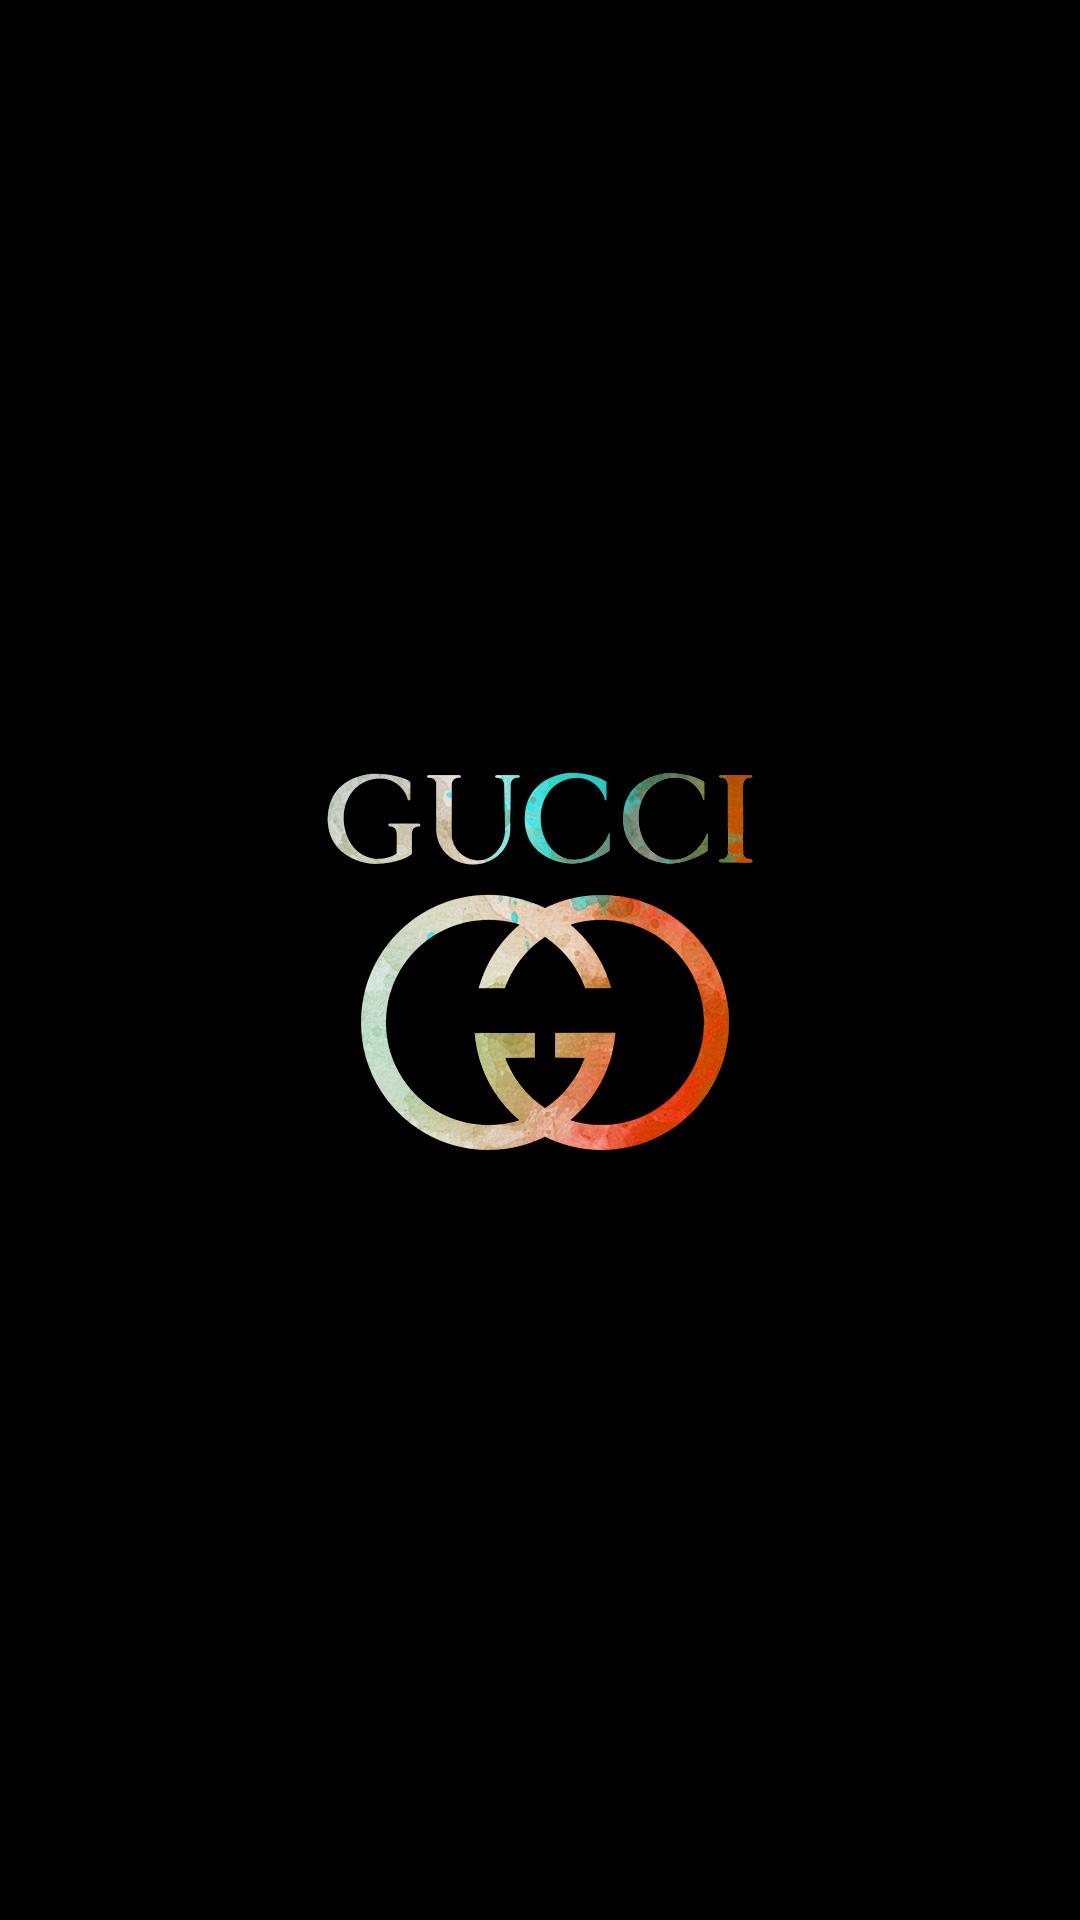 2023 Tải 33 ảnh Gucci Nền đen Hình Nền Gucci 4k đẹp Nhất